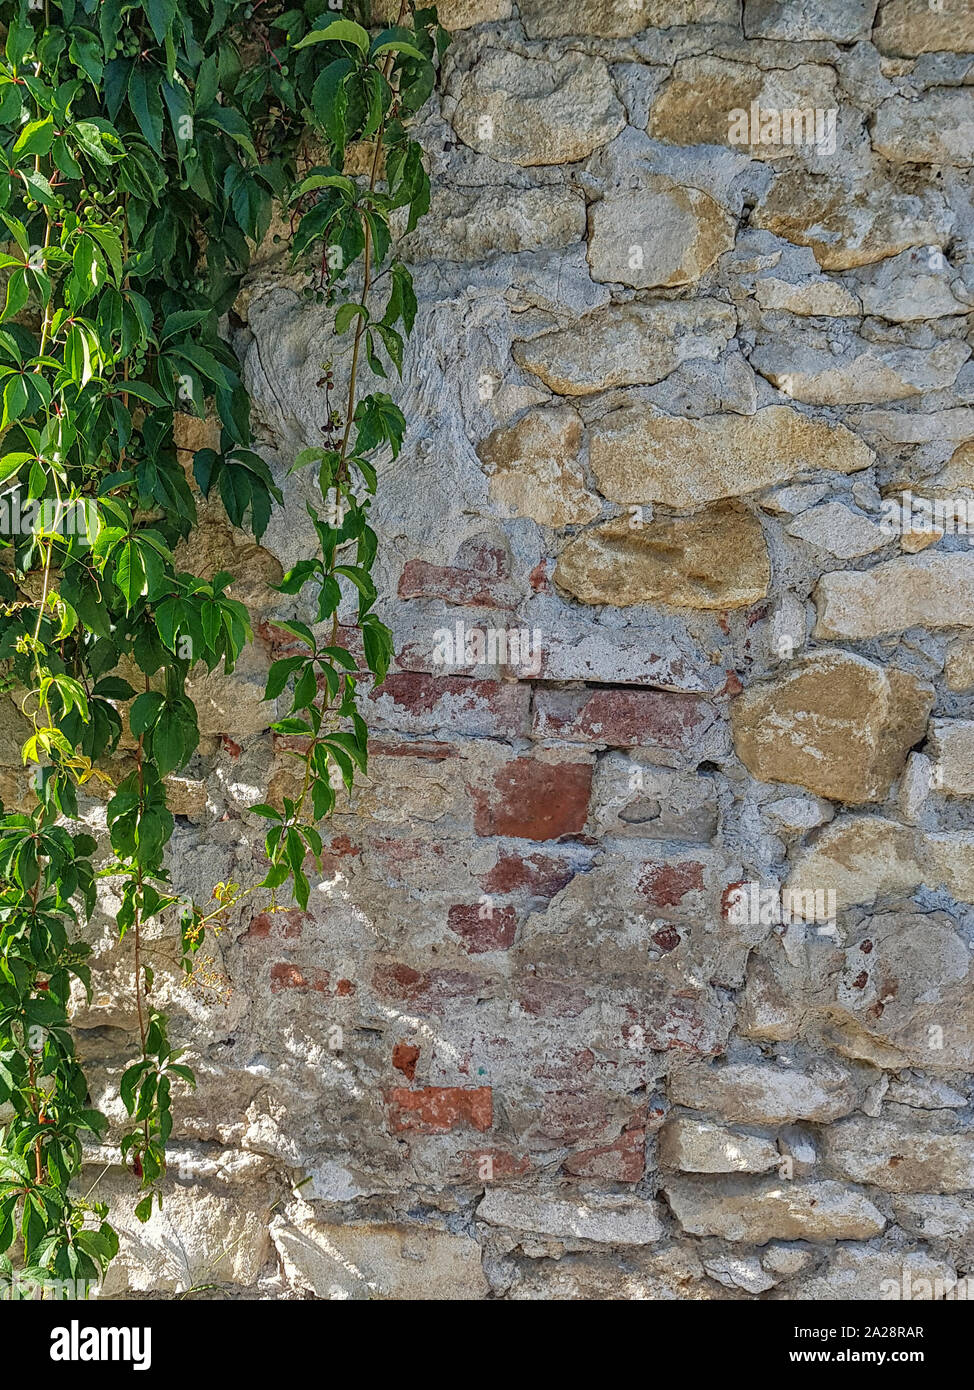 Grobe Mauer und mit grünem Efeu auf der rechten Seite des Bildes. Guter Hintergrund Bild. Stockfoto